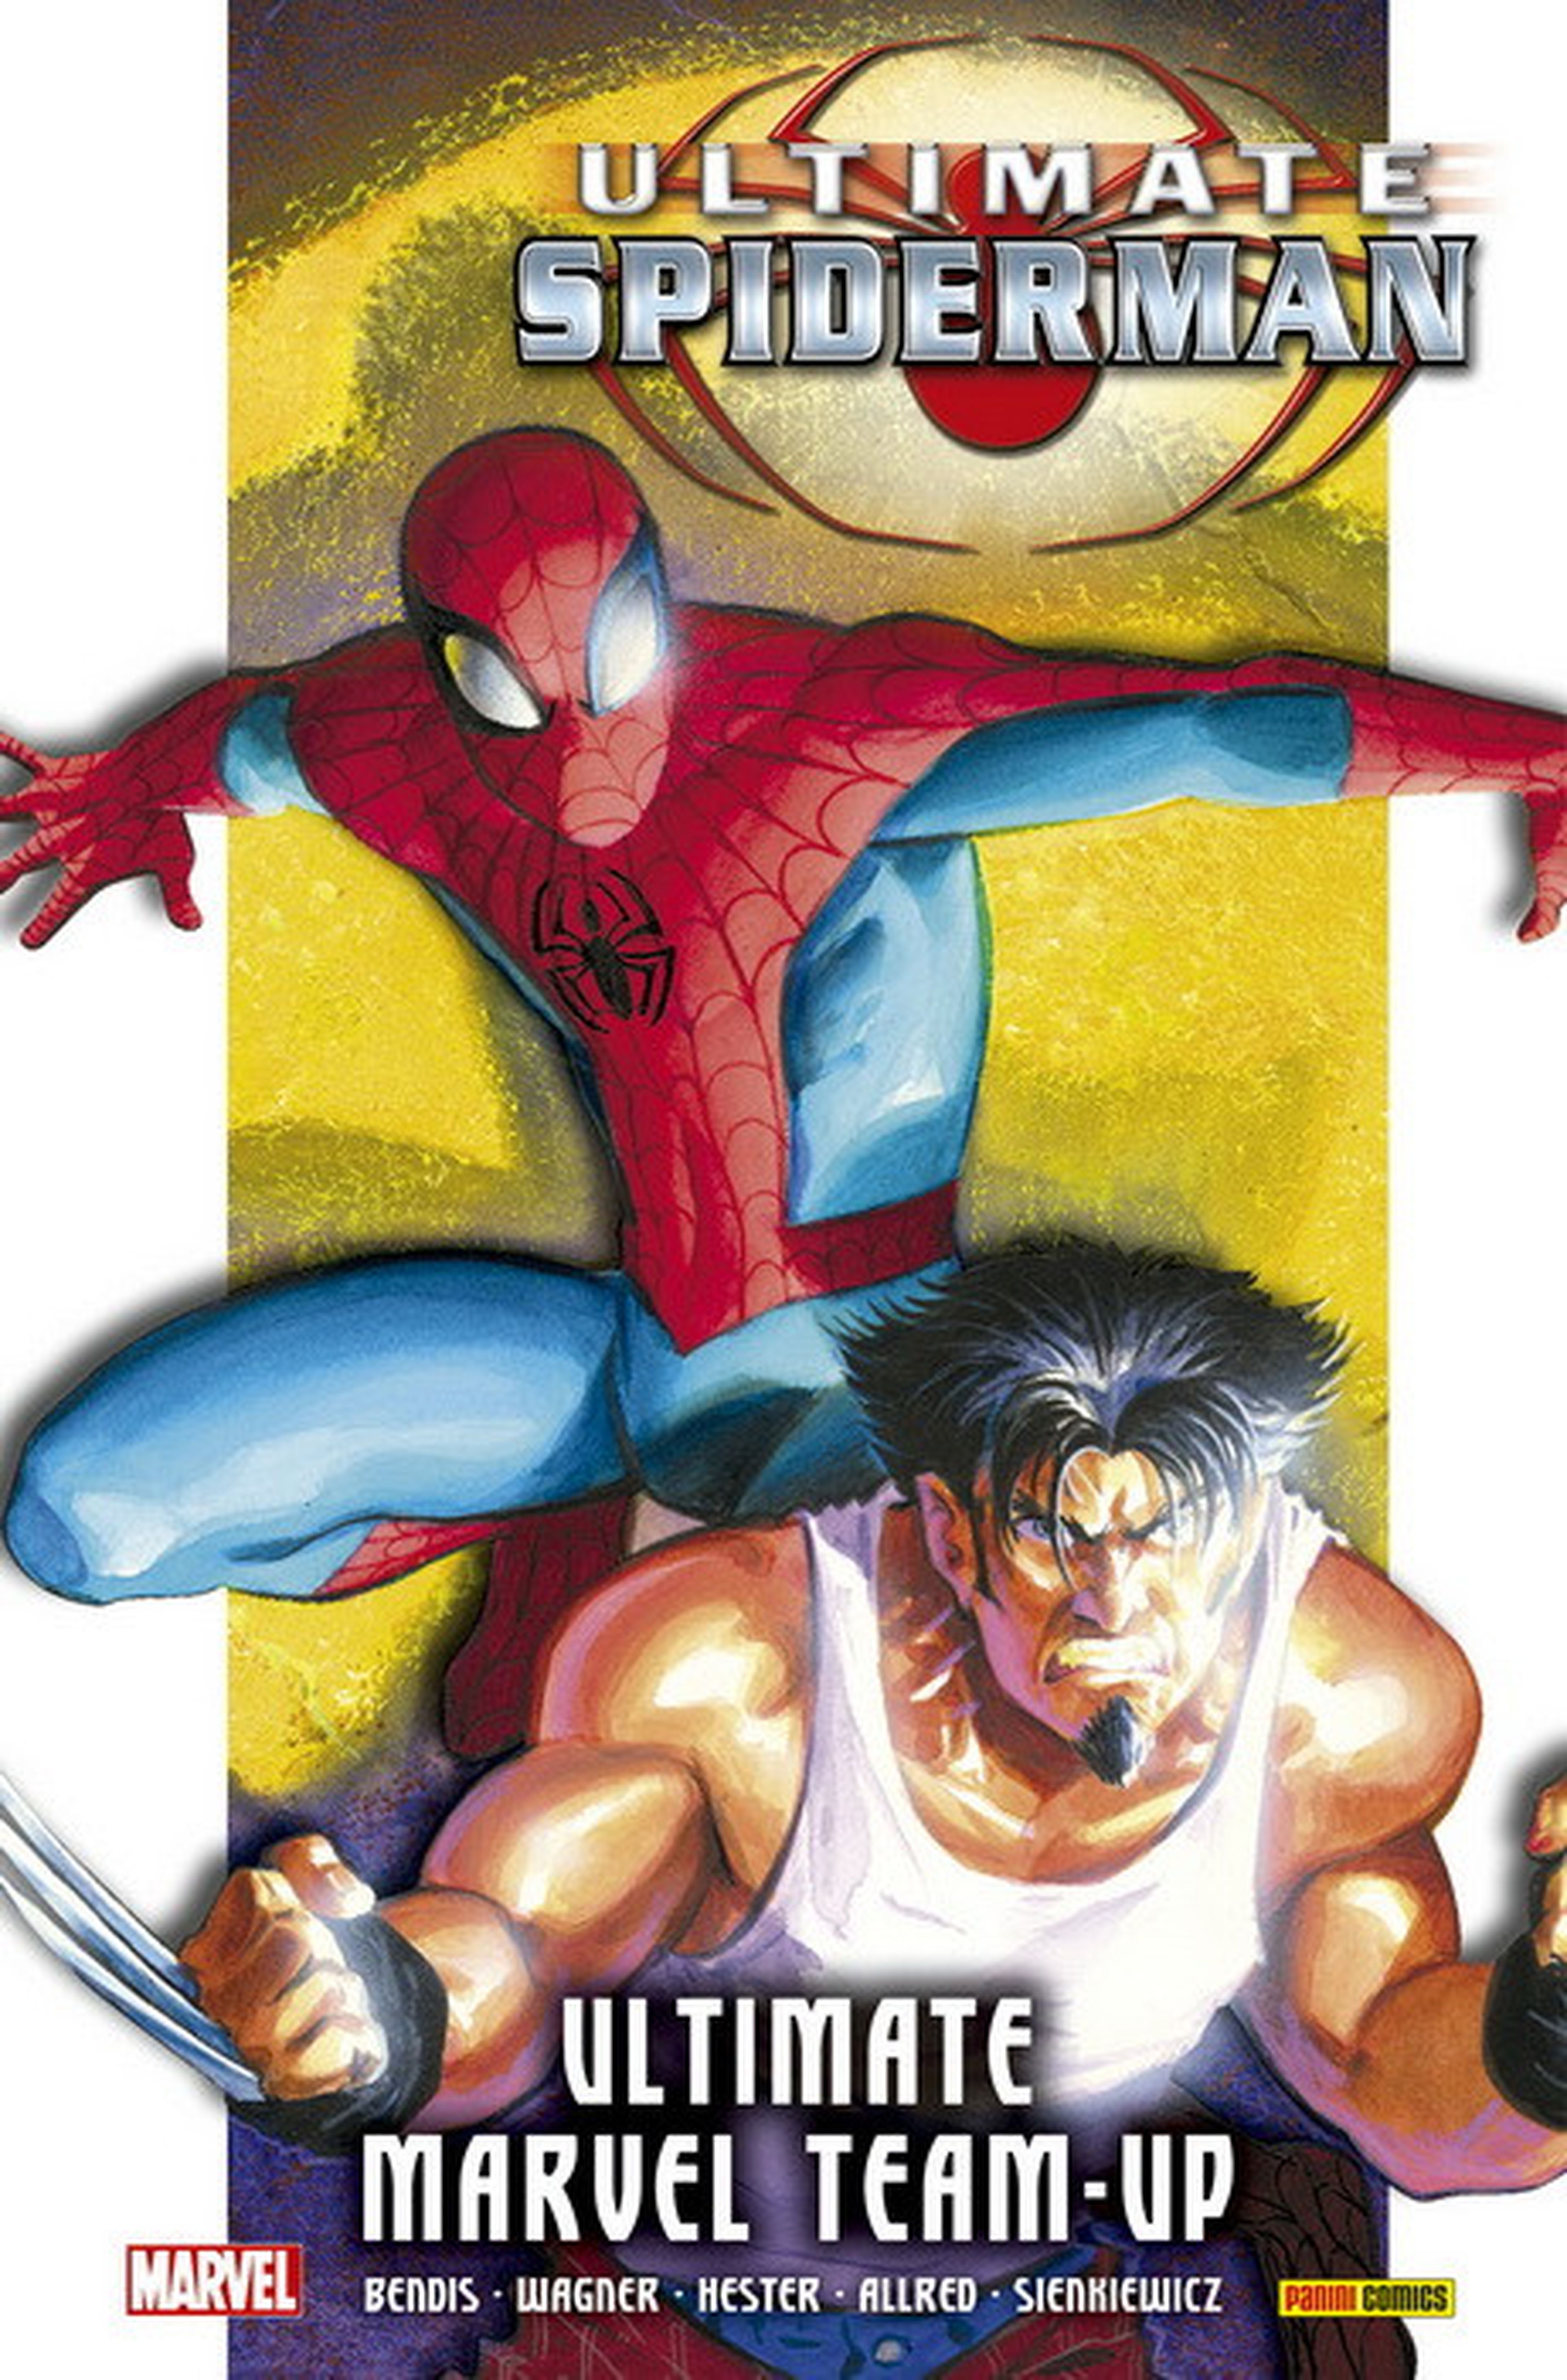 Ultimate Spider-Man: Ultimate Marvel Team-Up,